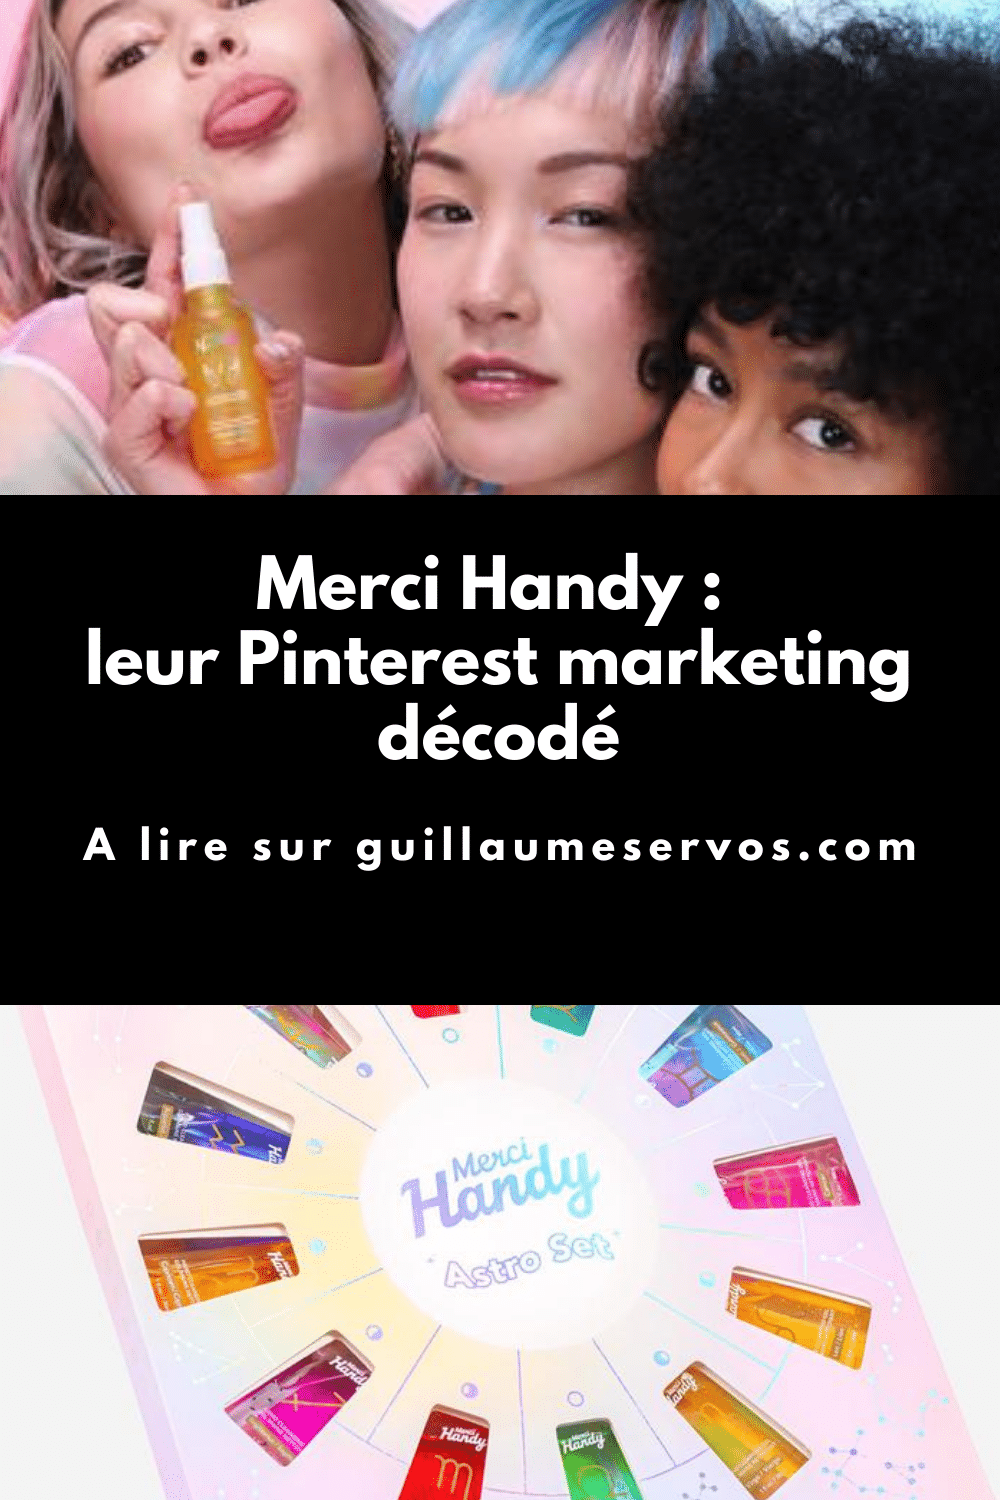 Comment Merci Handy utilise Pinterest pour son business ? Je décode le Pinterest marketing de la marque de cosmétiques du quotidien imaginé à Paris.